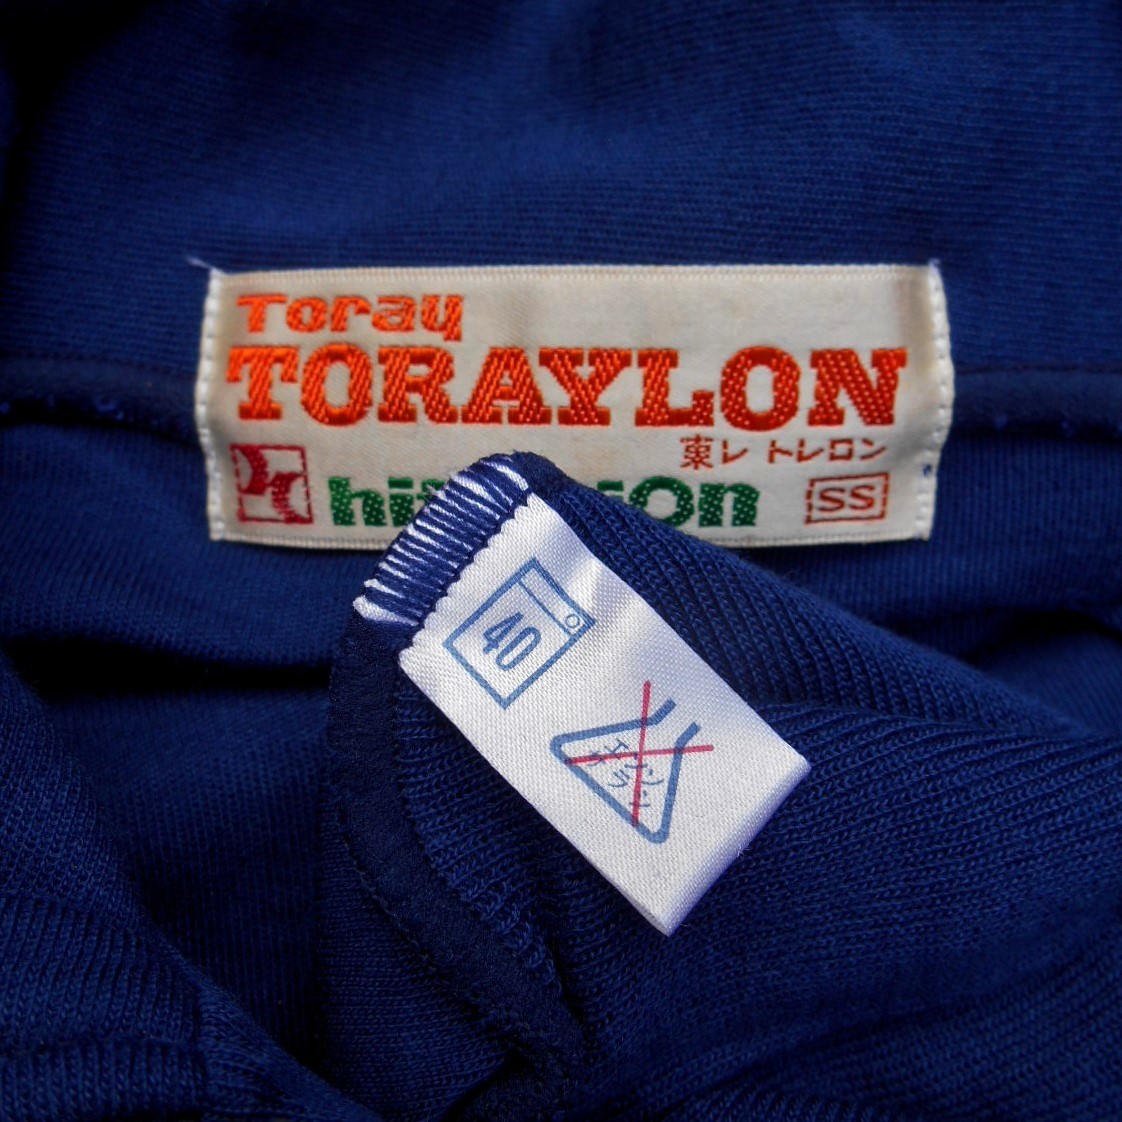  не использовался \'70s hit-union хит Union Toray джерси тренировка рубашка SS Vintage сделано в Японии темно-синий XS подлинная вещь Showa физическая подготовка спортивная форма 